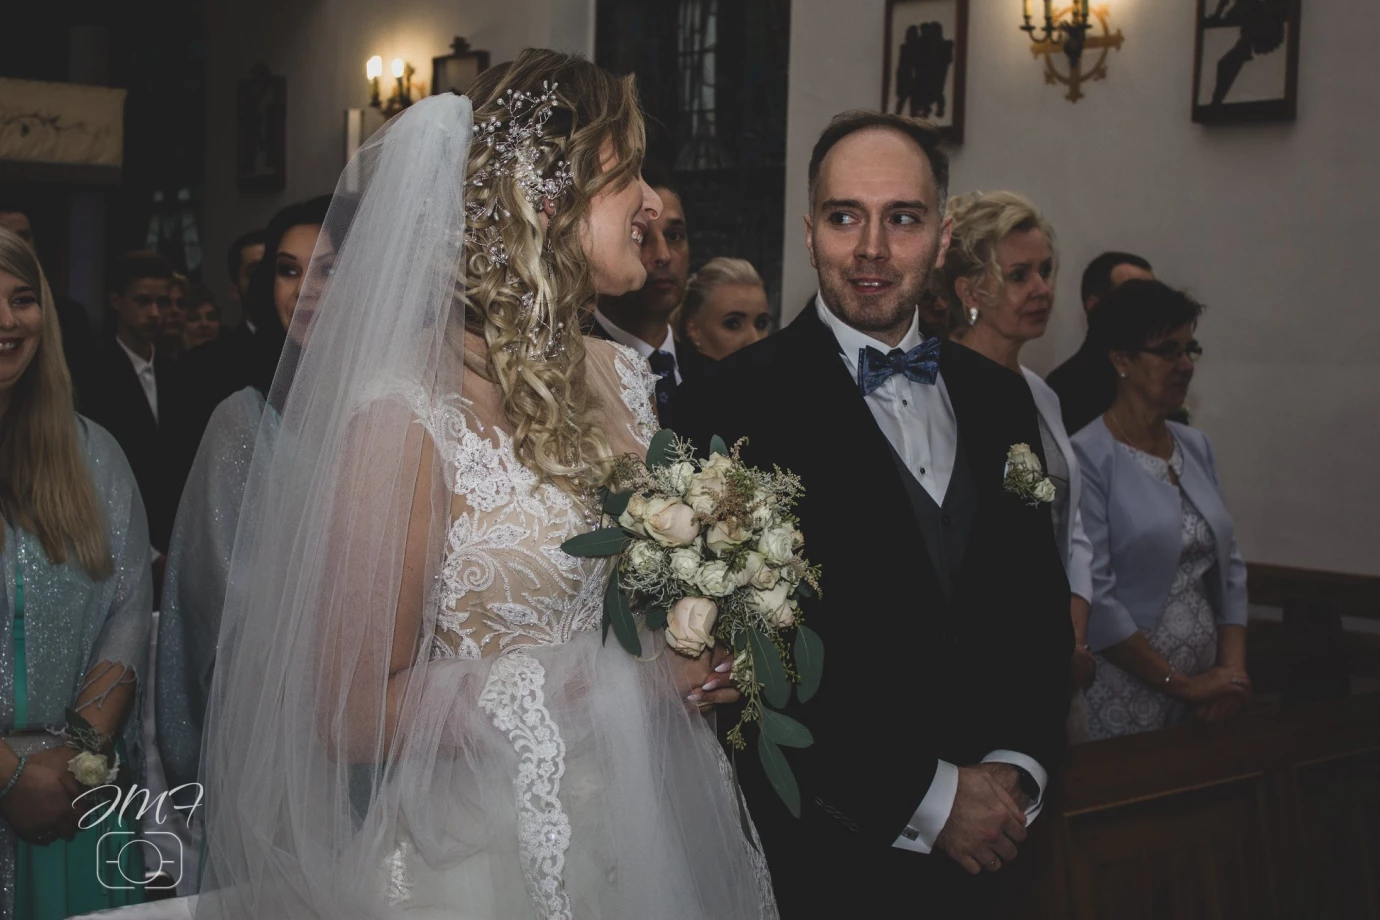 zdjęcia gdansk fotograf joanna-michalkiewicz portfolio zdjecia slubne inspiracje wesele plener slubny sesja slubna